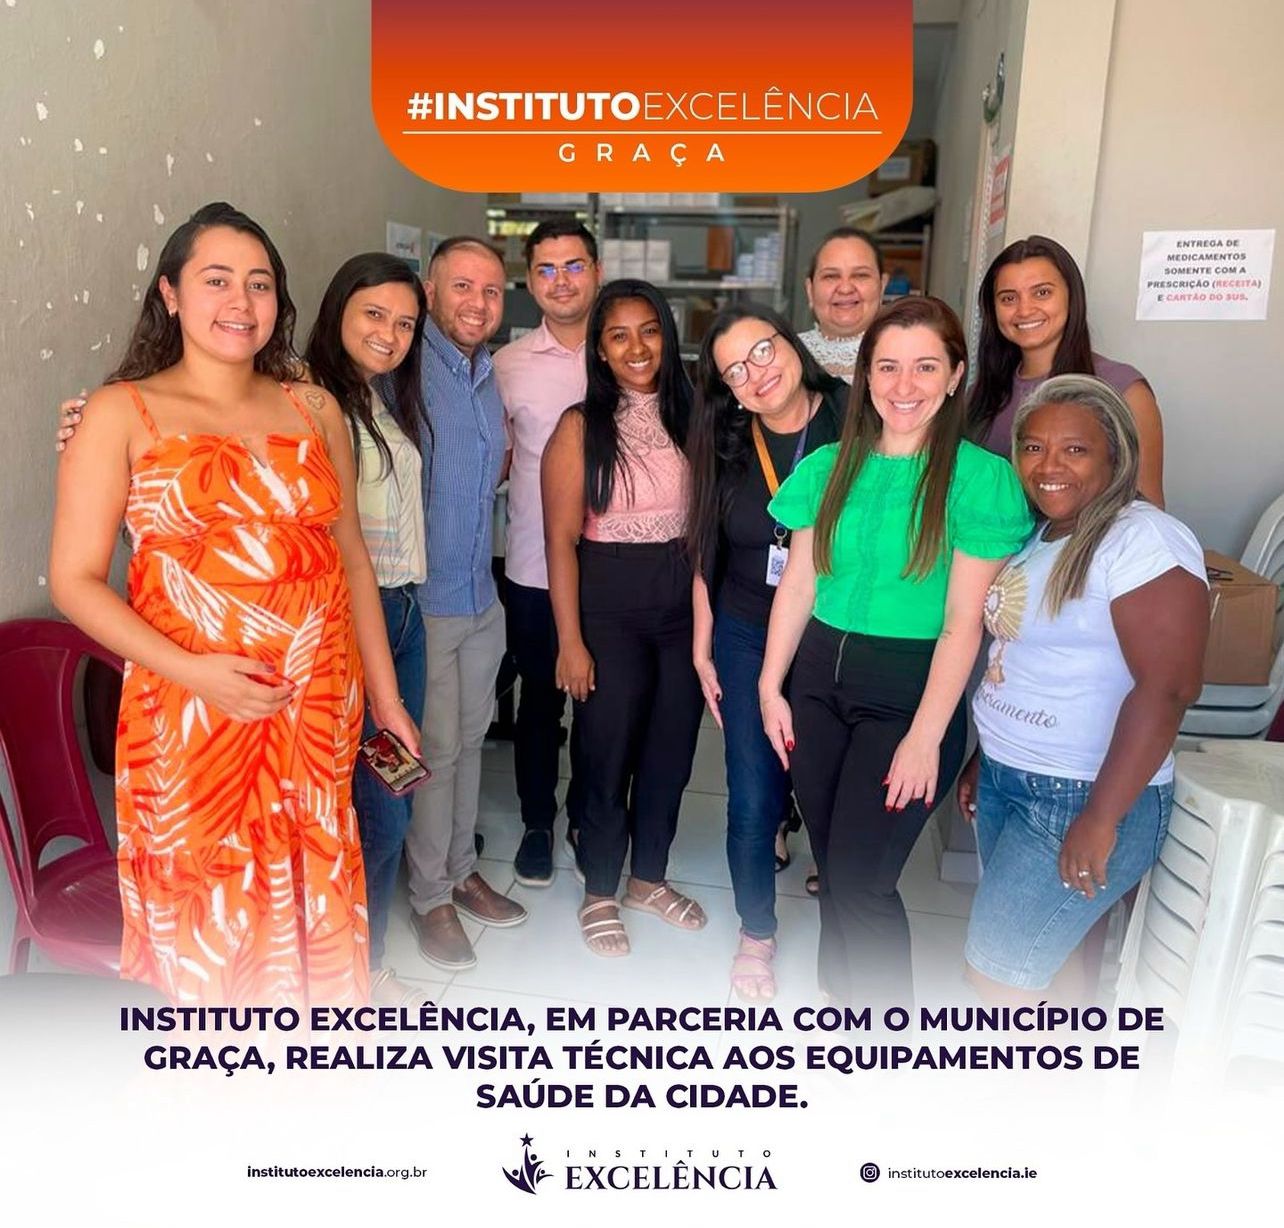 Instituto Excelência em parceria com o município de Graça realiza visita técnica aos equipamentos de saúde da cidade.